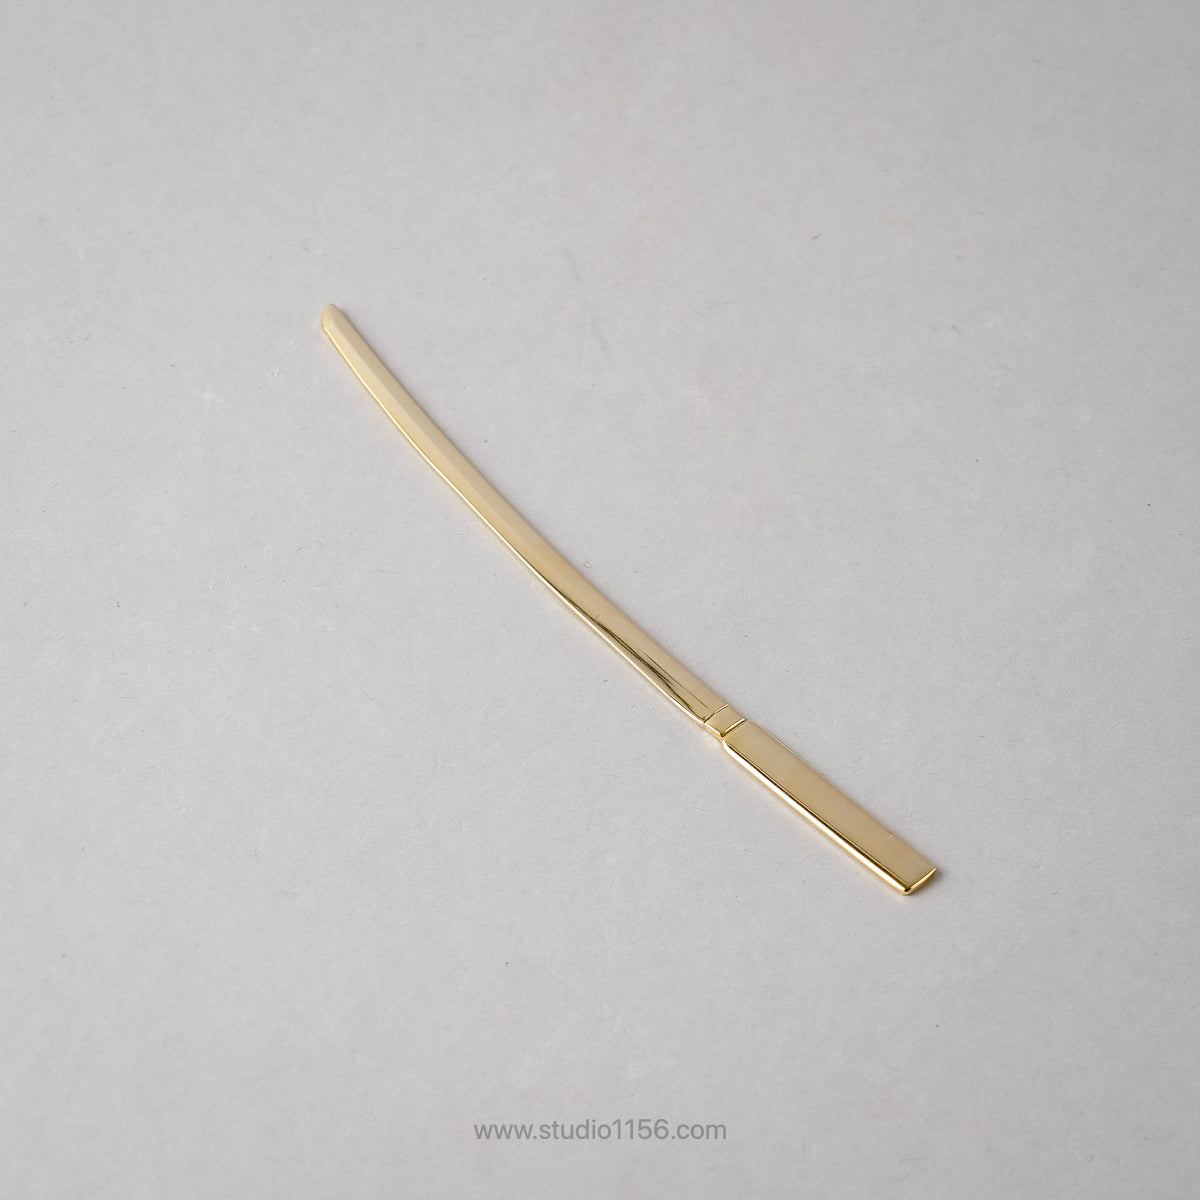 新潟燕カトラリー 日本刀 大太刀 和菓子 ナイフ 16cm [全4種] 金 Todai Studio1156